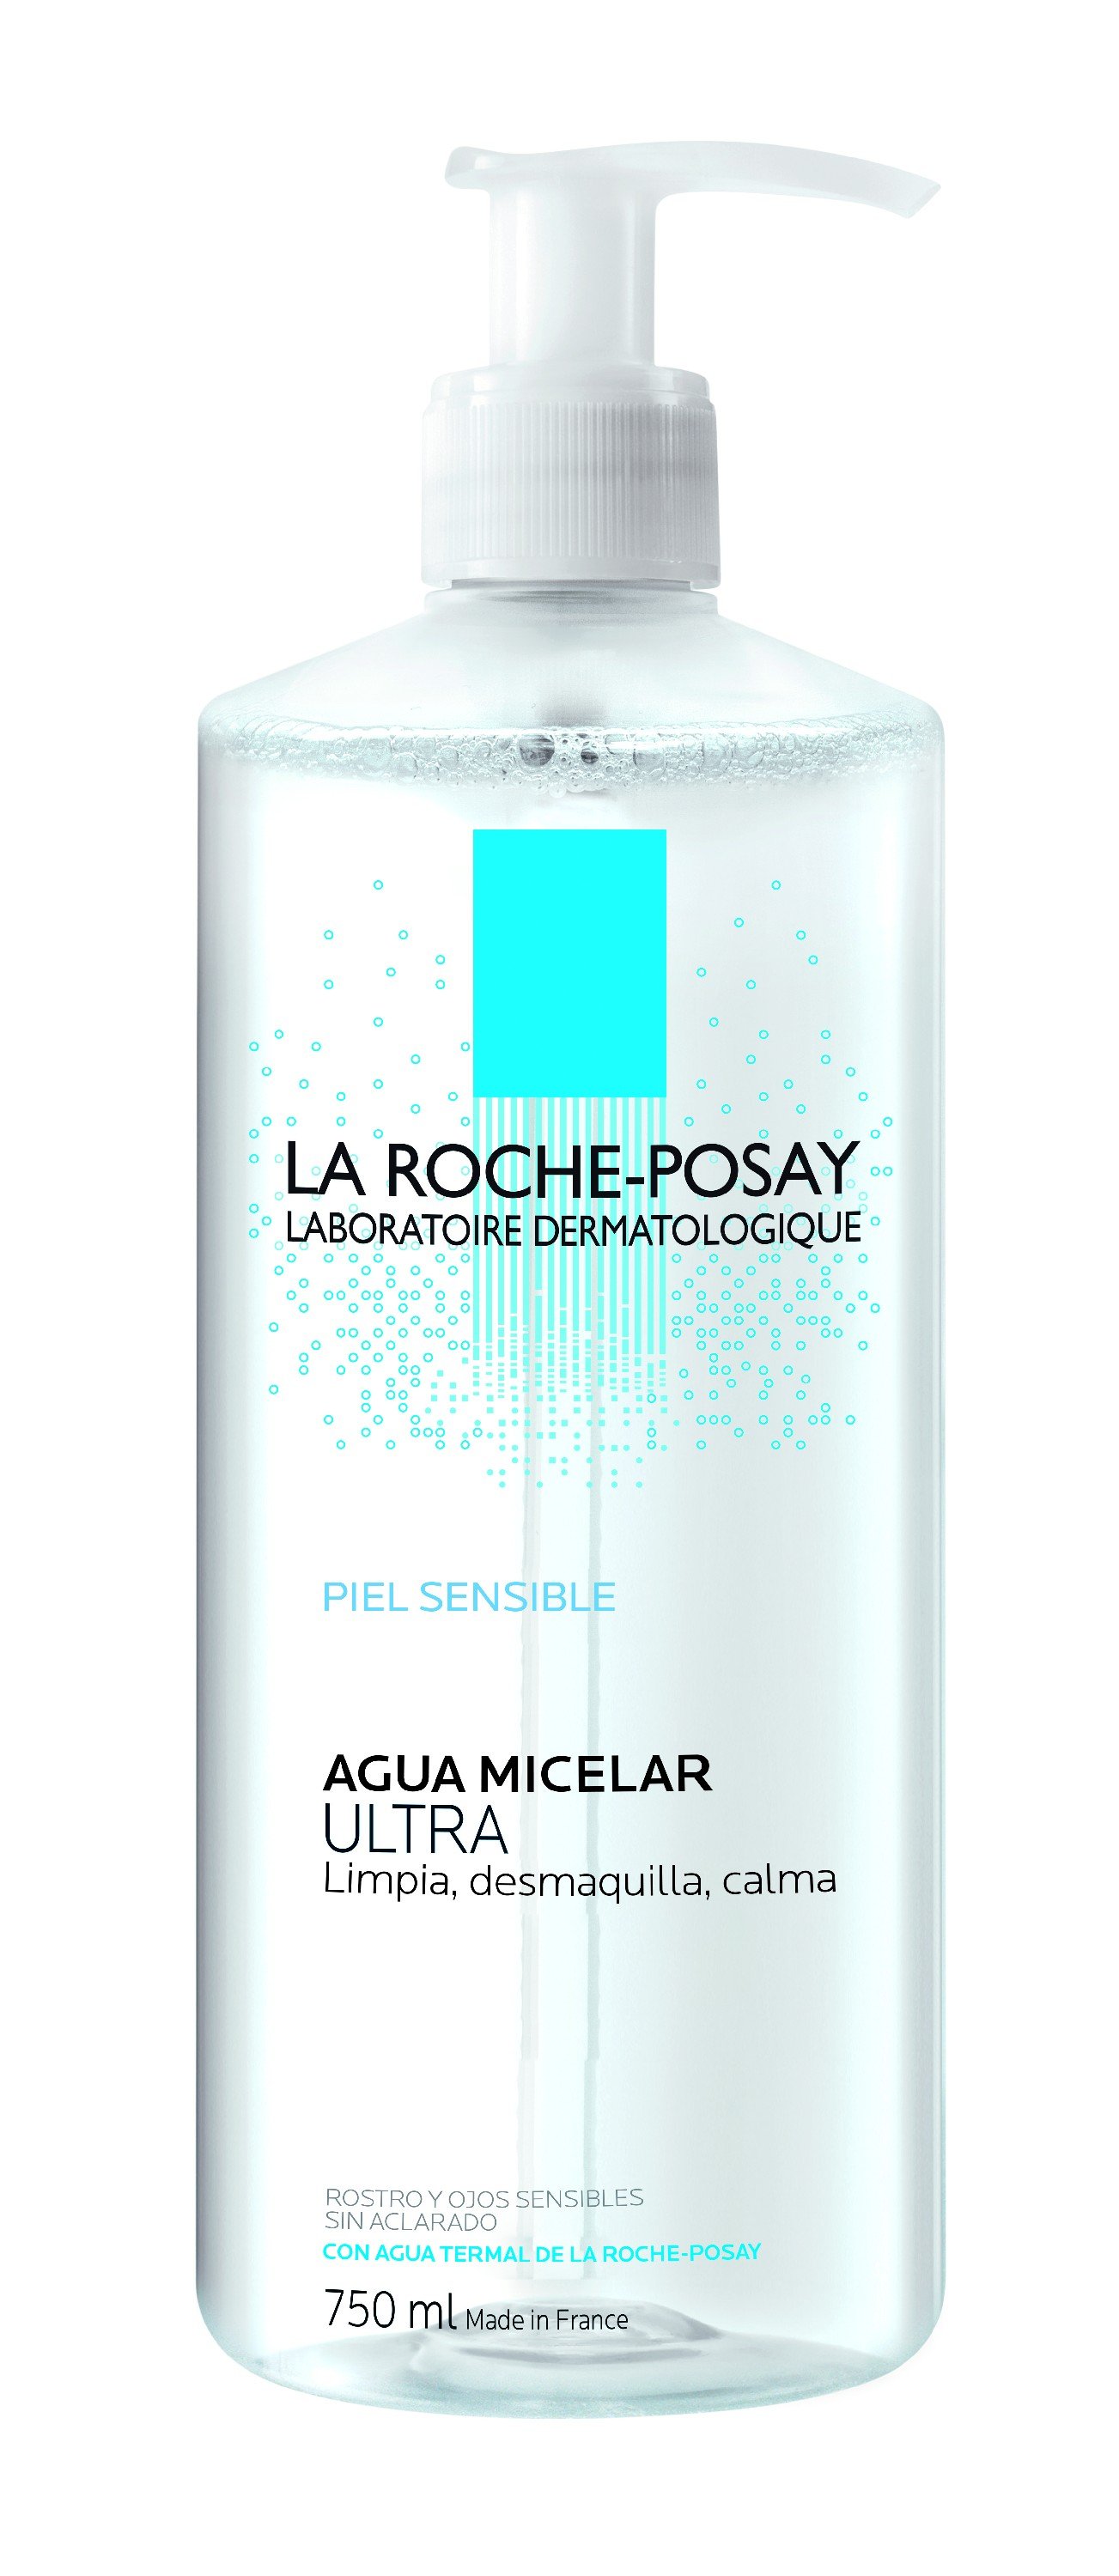 La Roche-Posay Solución Micelar Fisiológica, 750ml.